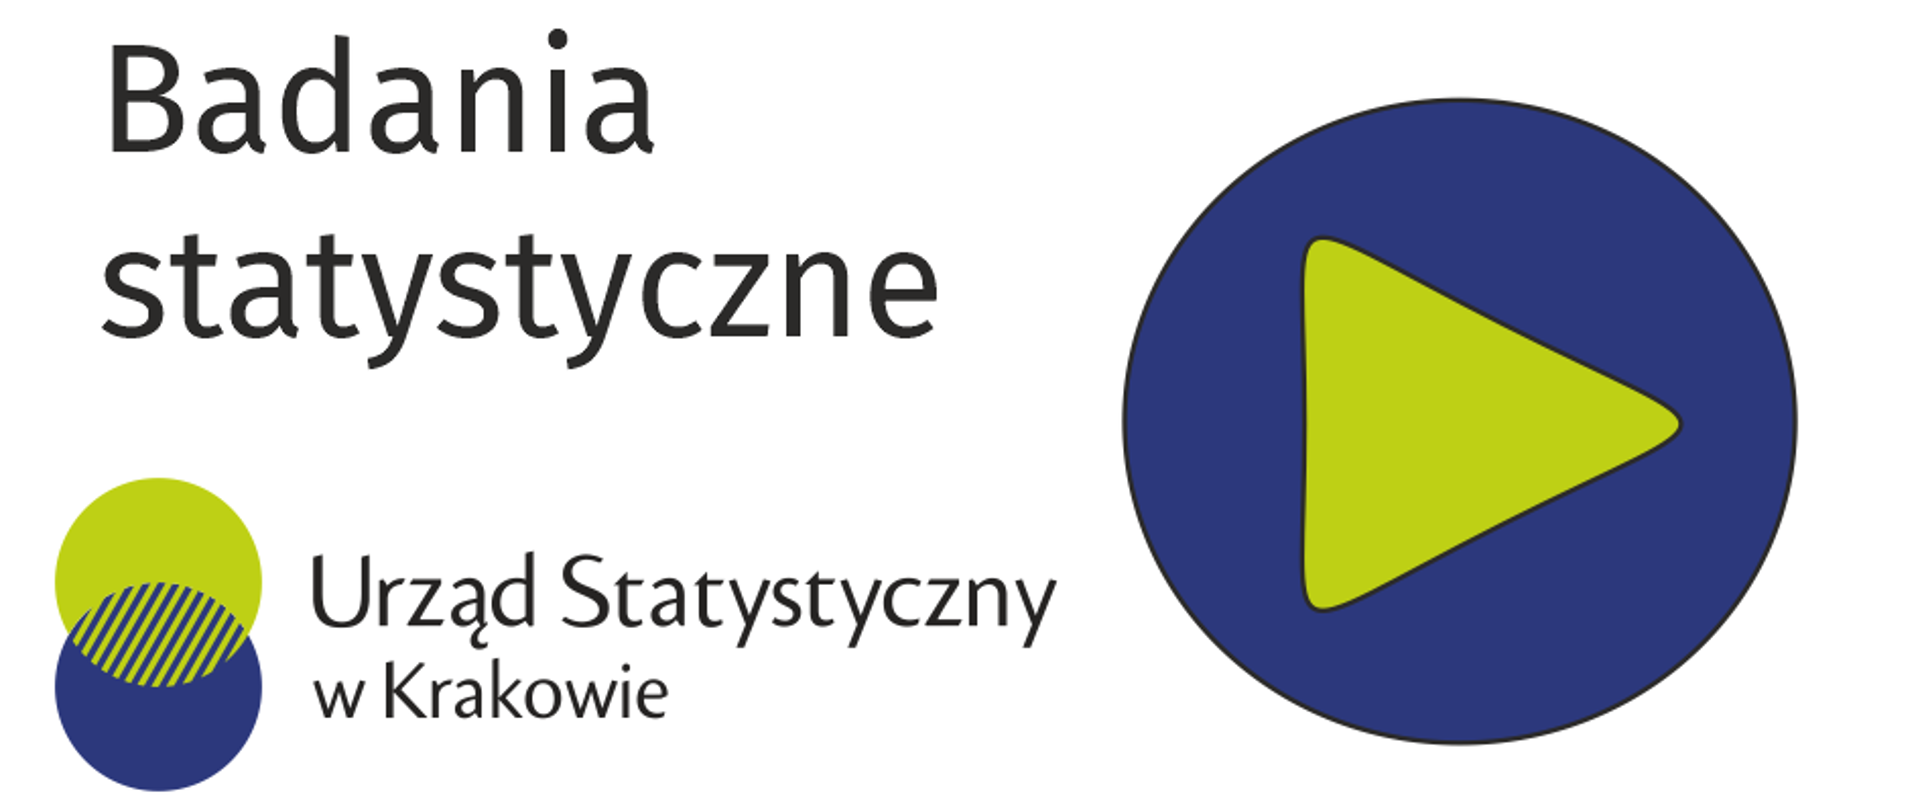 Logo Urzędu Statystycznego w Krakowie, symbol zielonego trójkąta wpisanego w granatowe koło